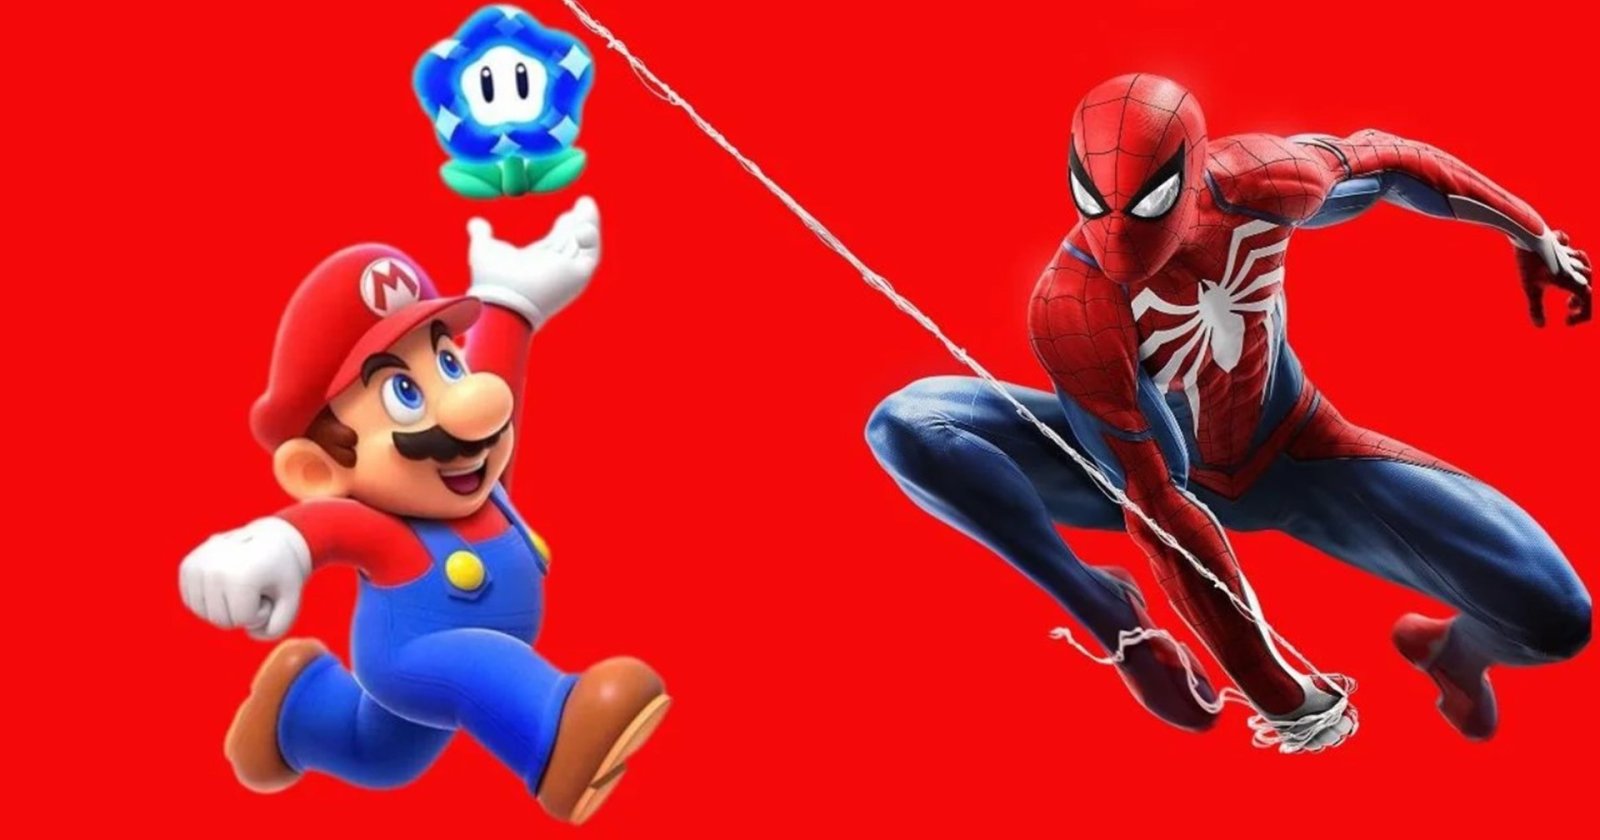 เกม Super Mario Wonder ได้คะแนนรีวิวสูงกว่า Spiderman 2 และ Starfield